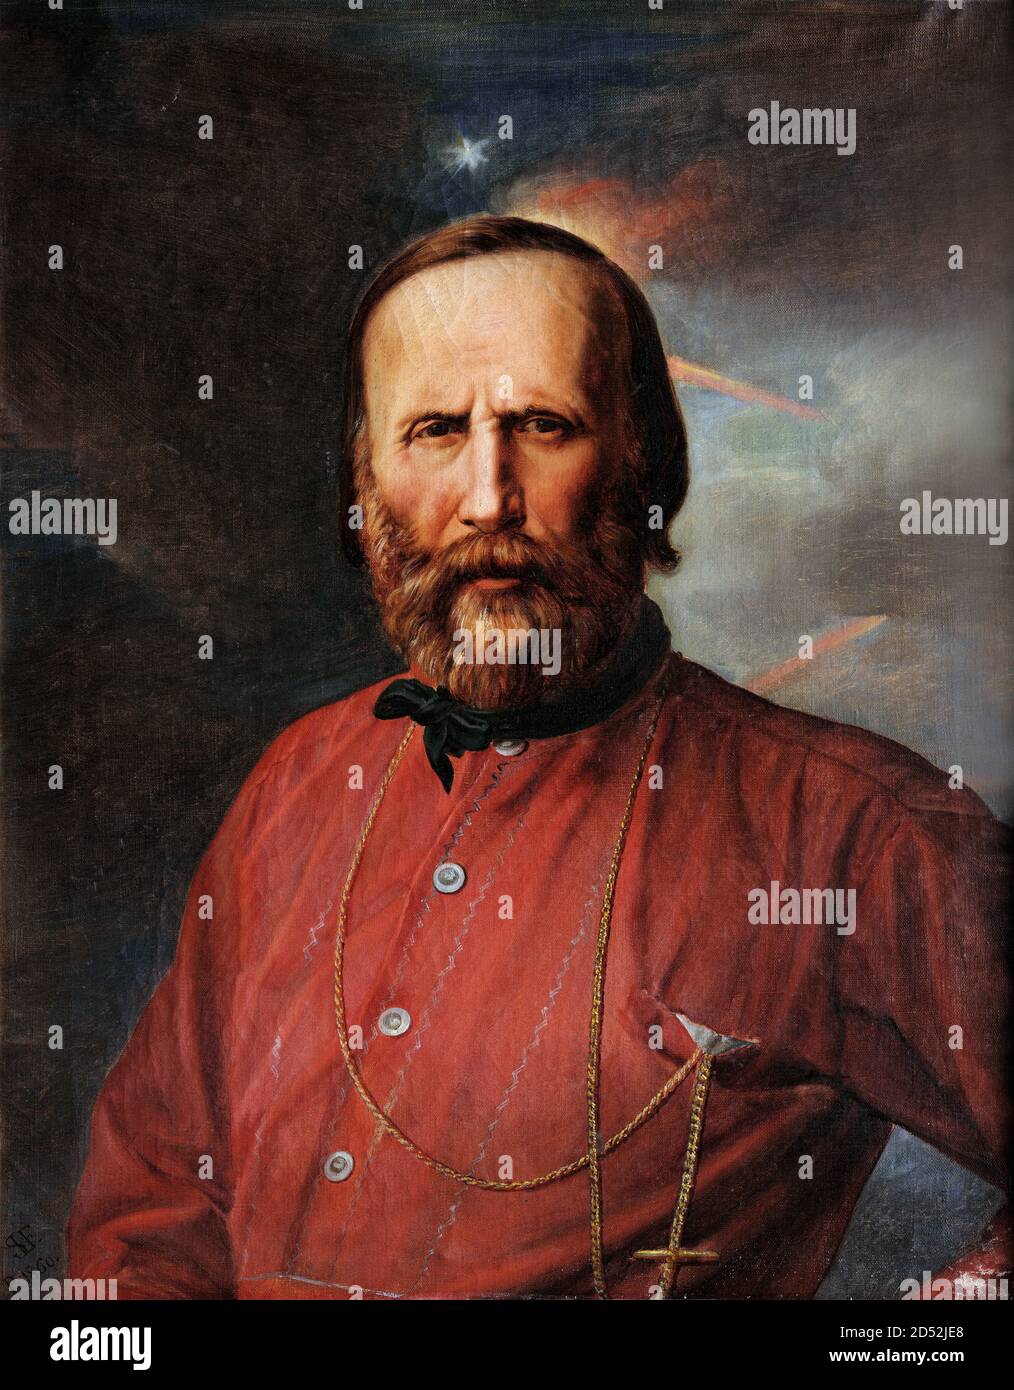 Giuseppe Garibaldi. Portrait du général et homme politique italien Giuseppe Maria Garibaldi (1807-1882) par Salvatore Lo forte, huile sur bois, 1860 Banque D'Images